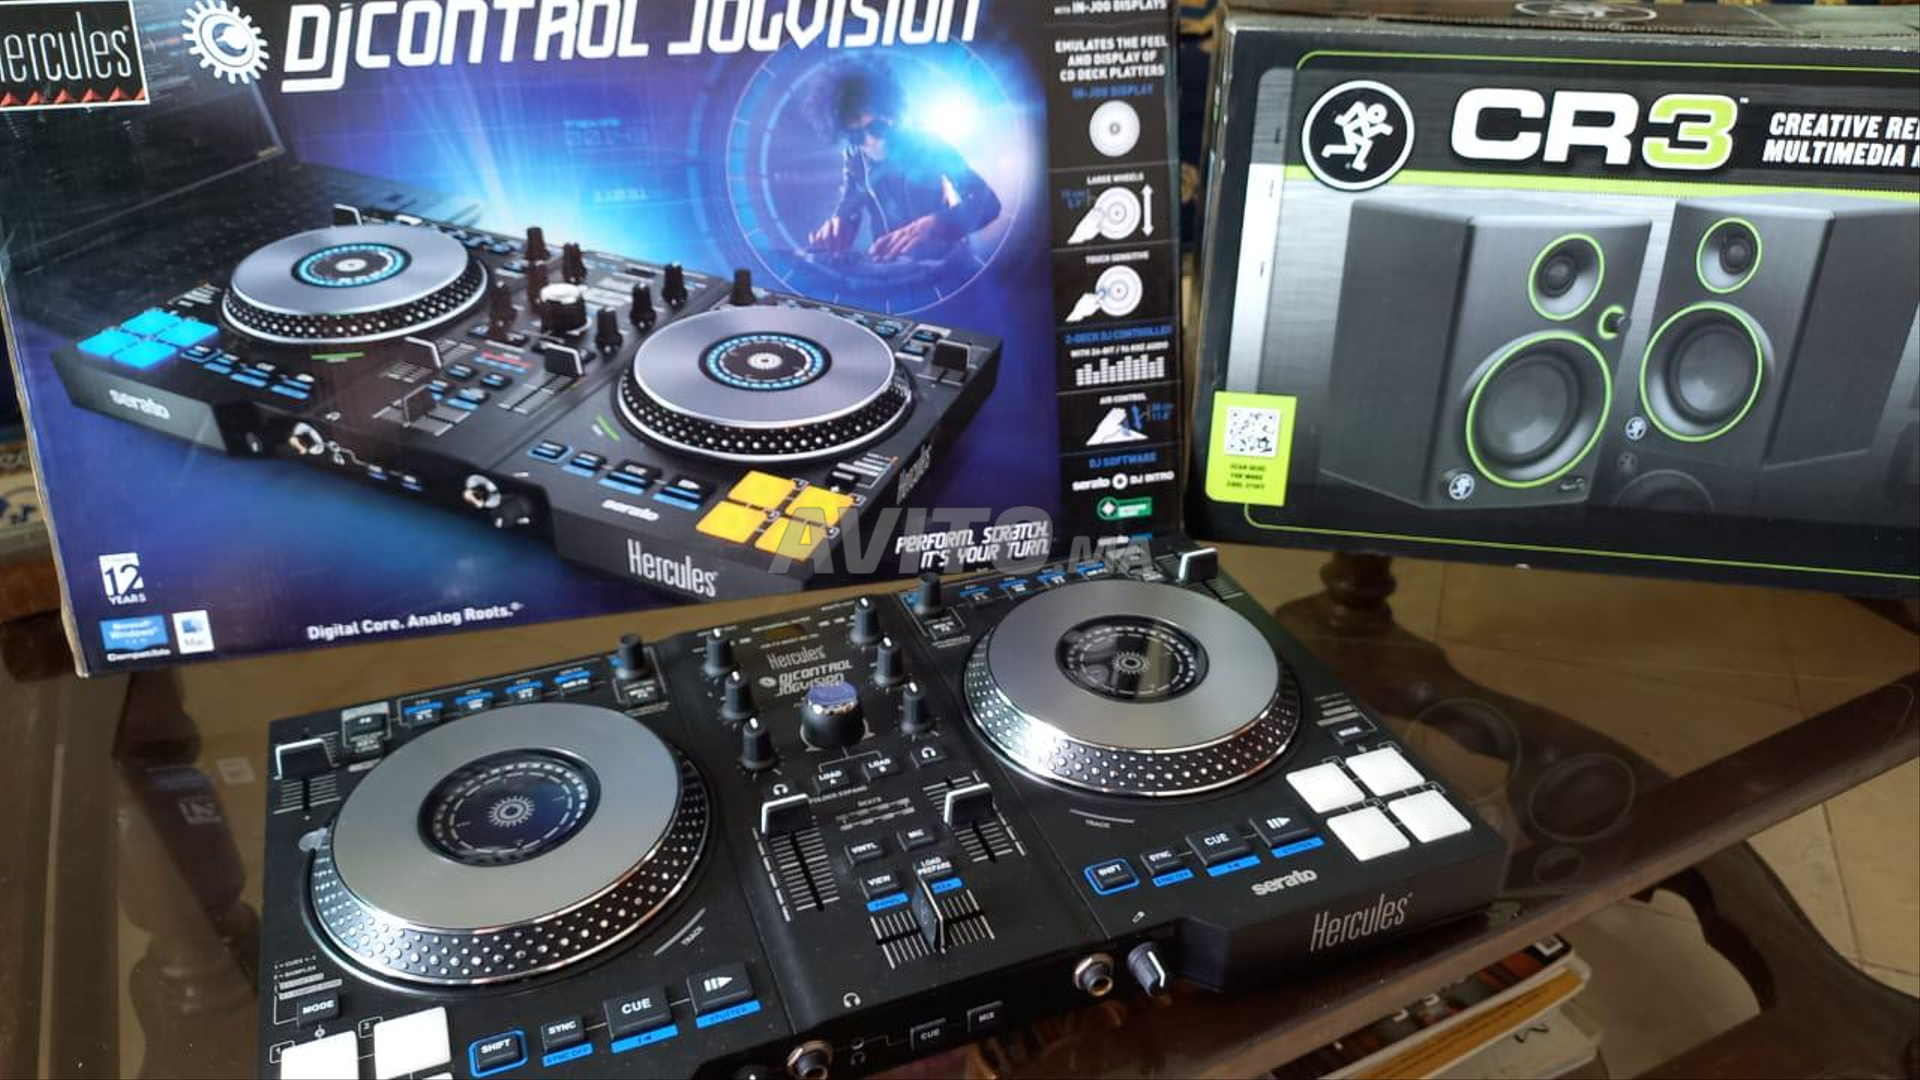 Table de mixage Hercules DJ Control Jogvision, Table de mixage